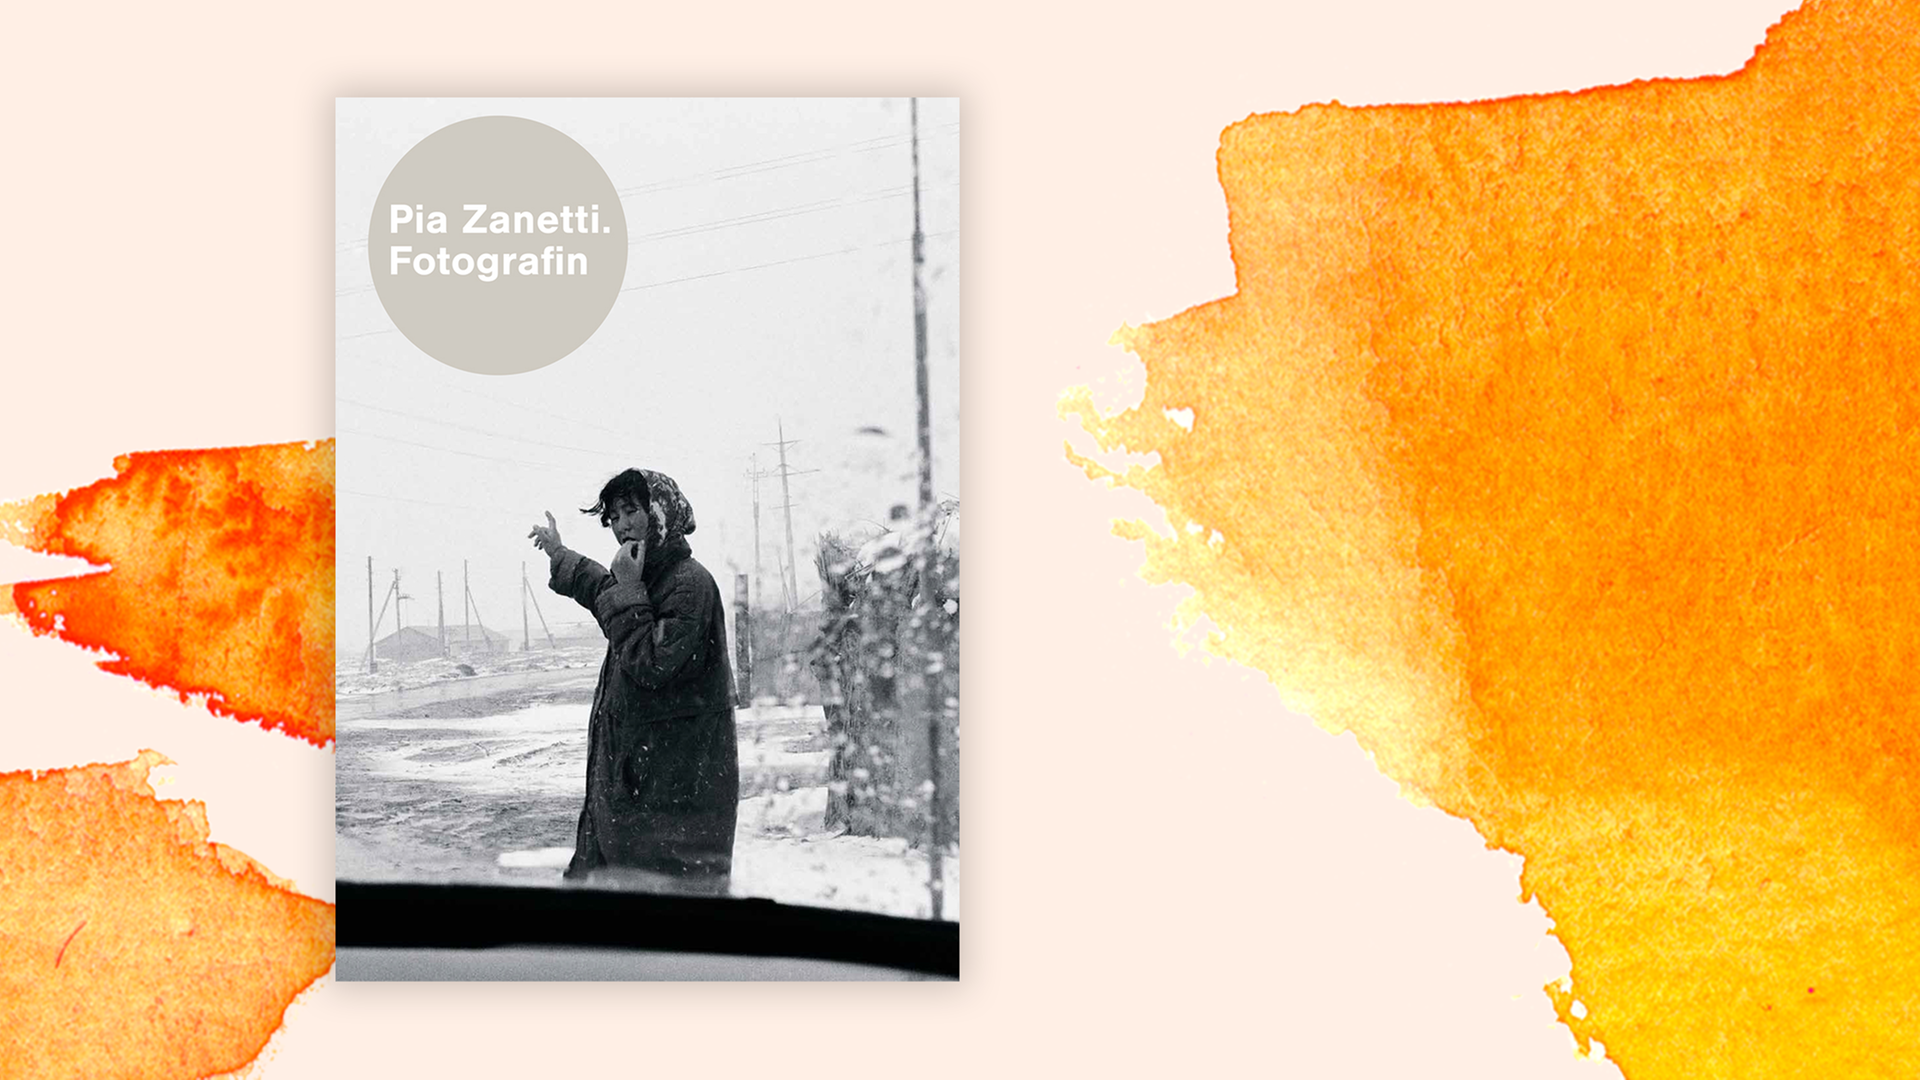 Zu sehen ist das Cover des Buches "Pia Zanetti. Fotografin", Verlag Scheidegger & Spiess, 2021.